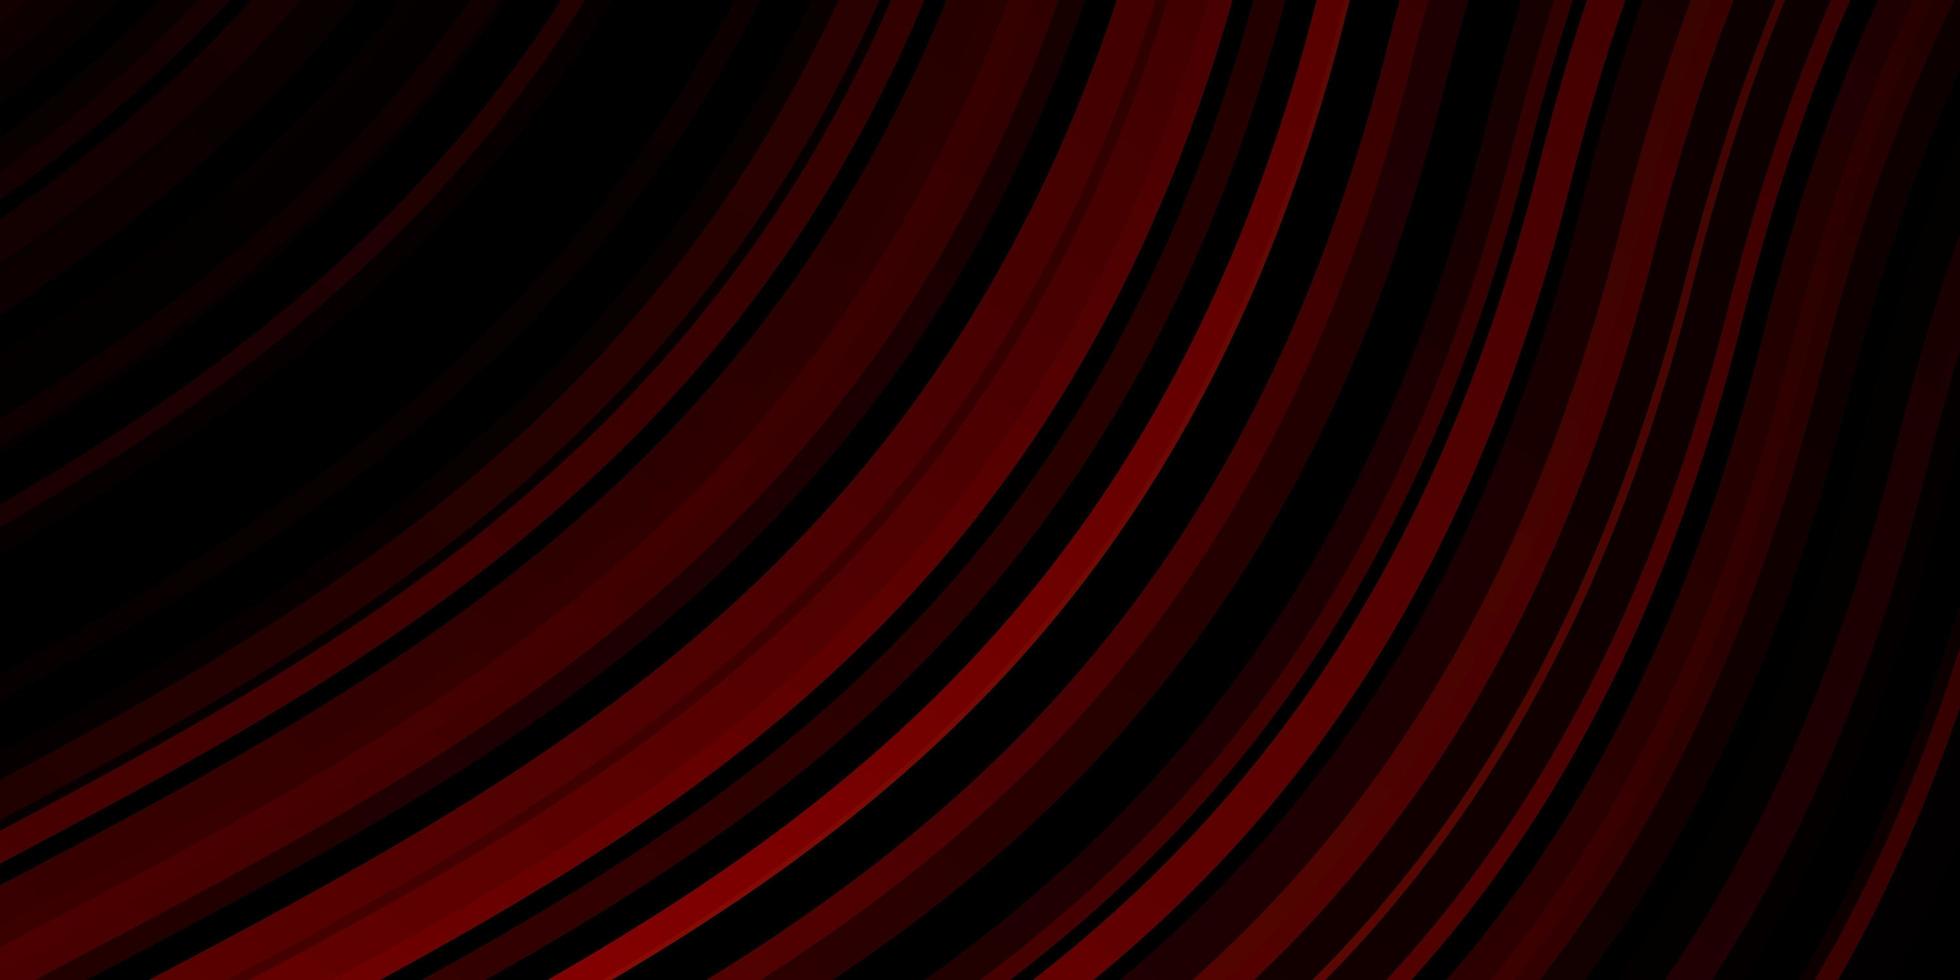 sfondo vettoriale rosso scuro con linee piegate. illustrazione luminosa con archi circolari sfumati. modello per siti Web, pagine di destinazione.